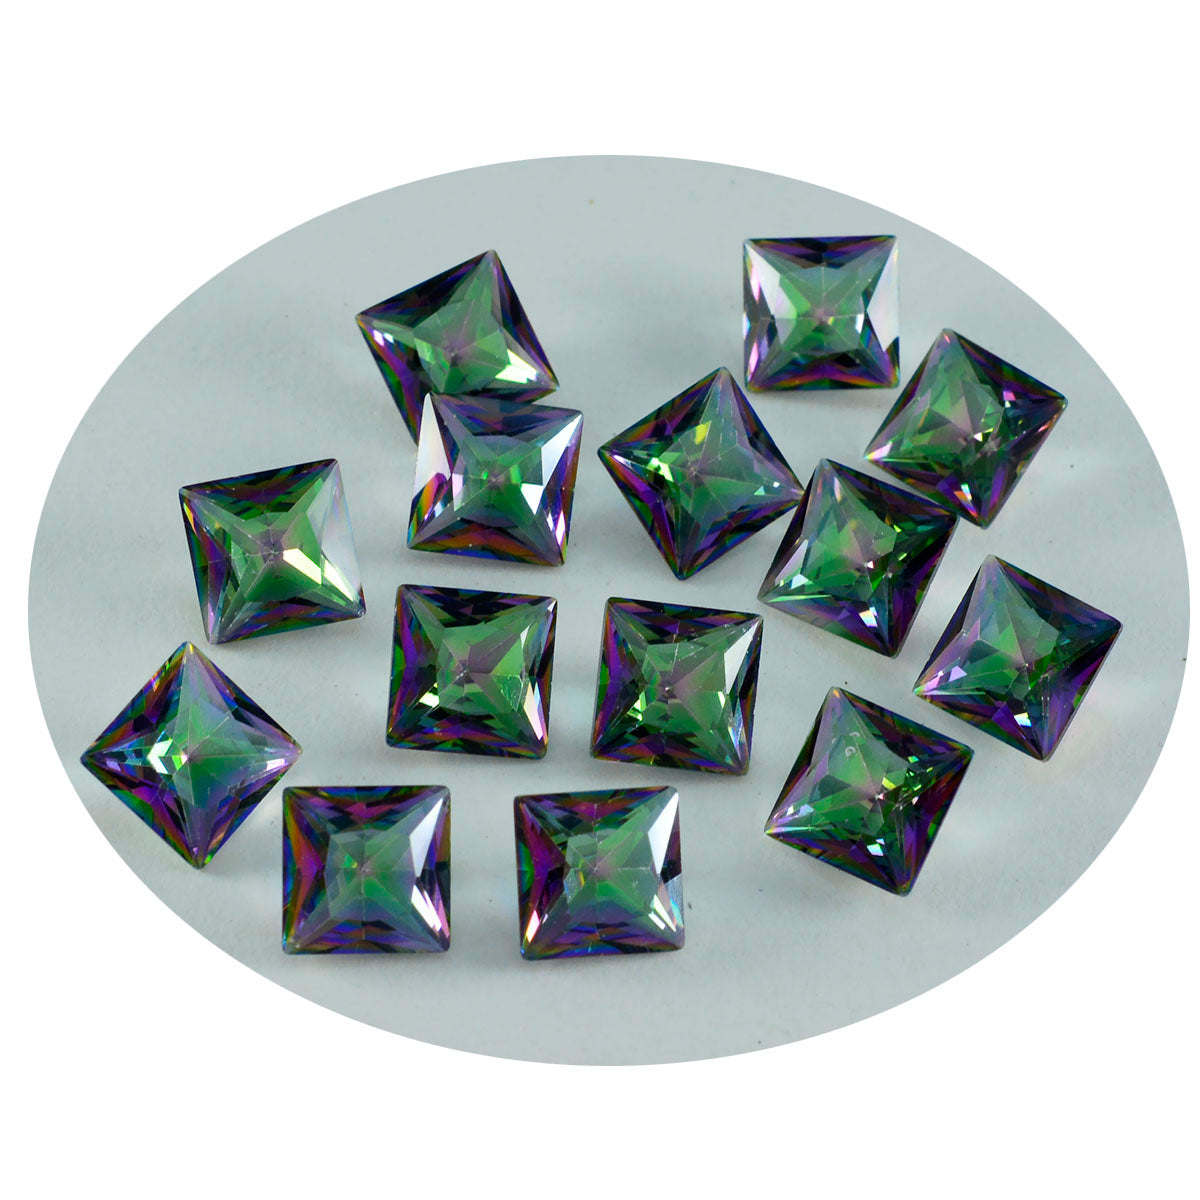 Riyogems 1 pièce de quartz mystique multicolore à facettes 6x6mm forme carrée belle qualité pierres précieuses en vrac